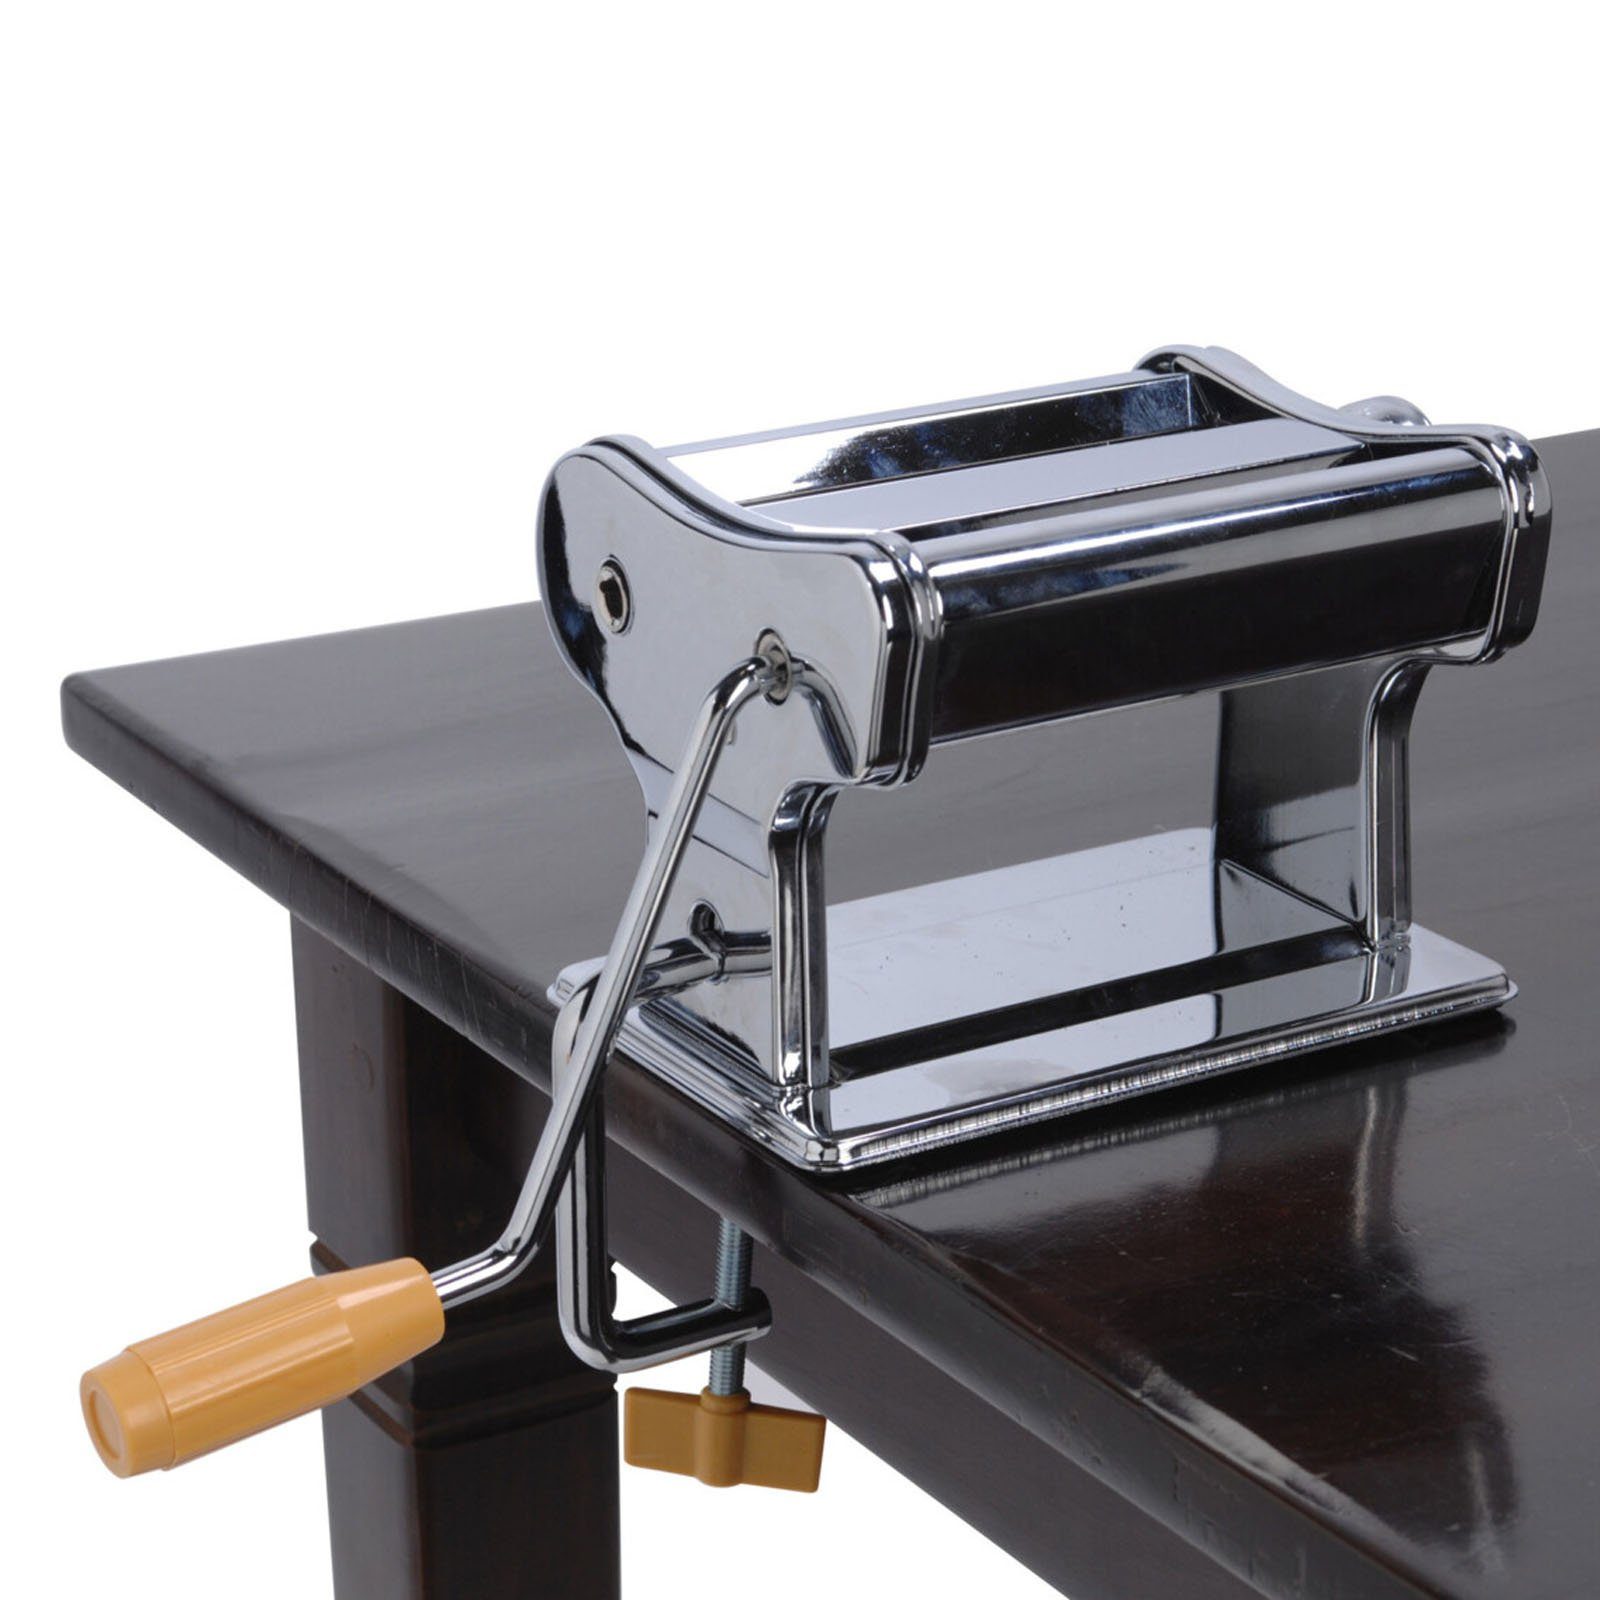 Maschine Edelstahl Nudel und Pastamaker Tischklammer Pastamaschine Maker, Nudelwalze mit Pasta HAC24 Nudelmaschine Handkurbel